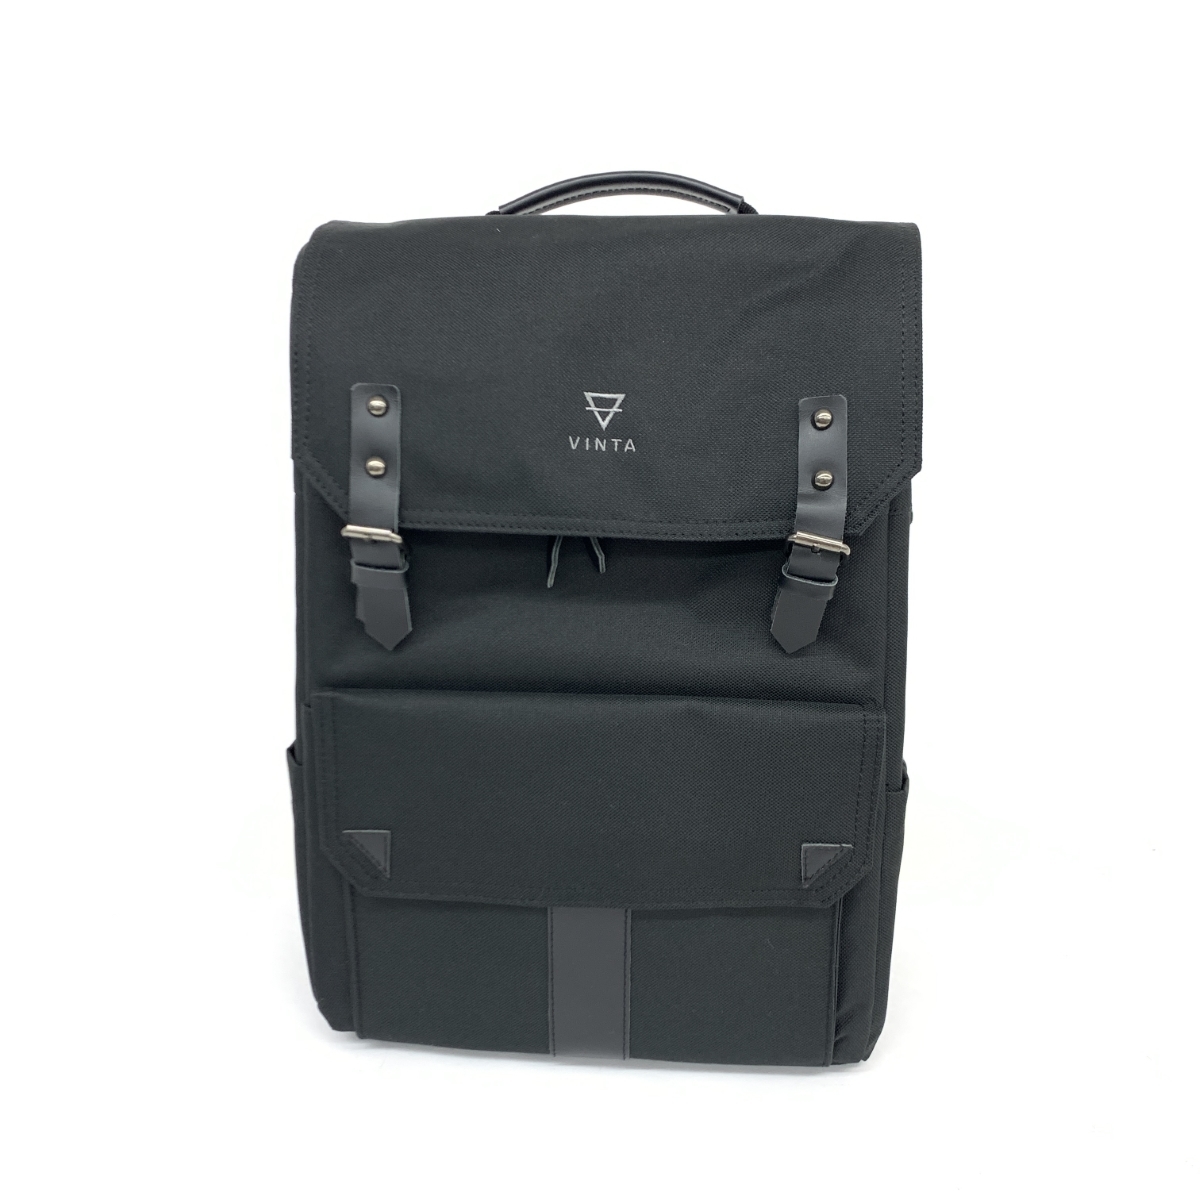 良好◆VINTA ヴィンタ Sシリーズ カメラバッグ◆ ブラック ナイロン メンズ リュックサック bag 鞄